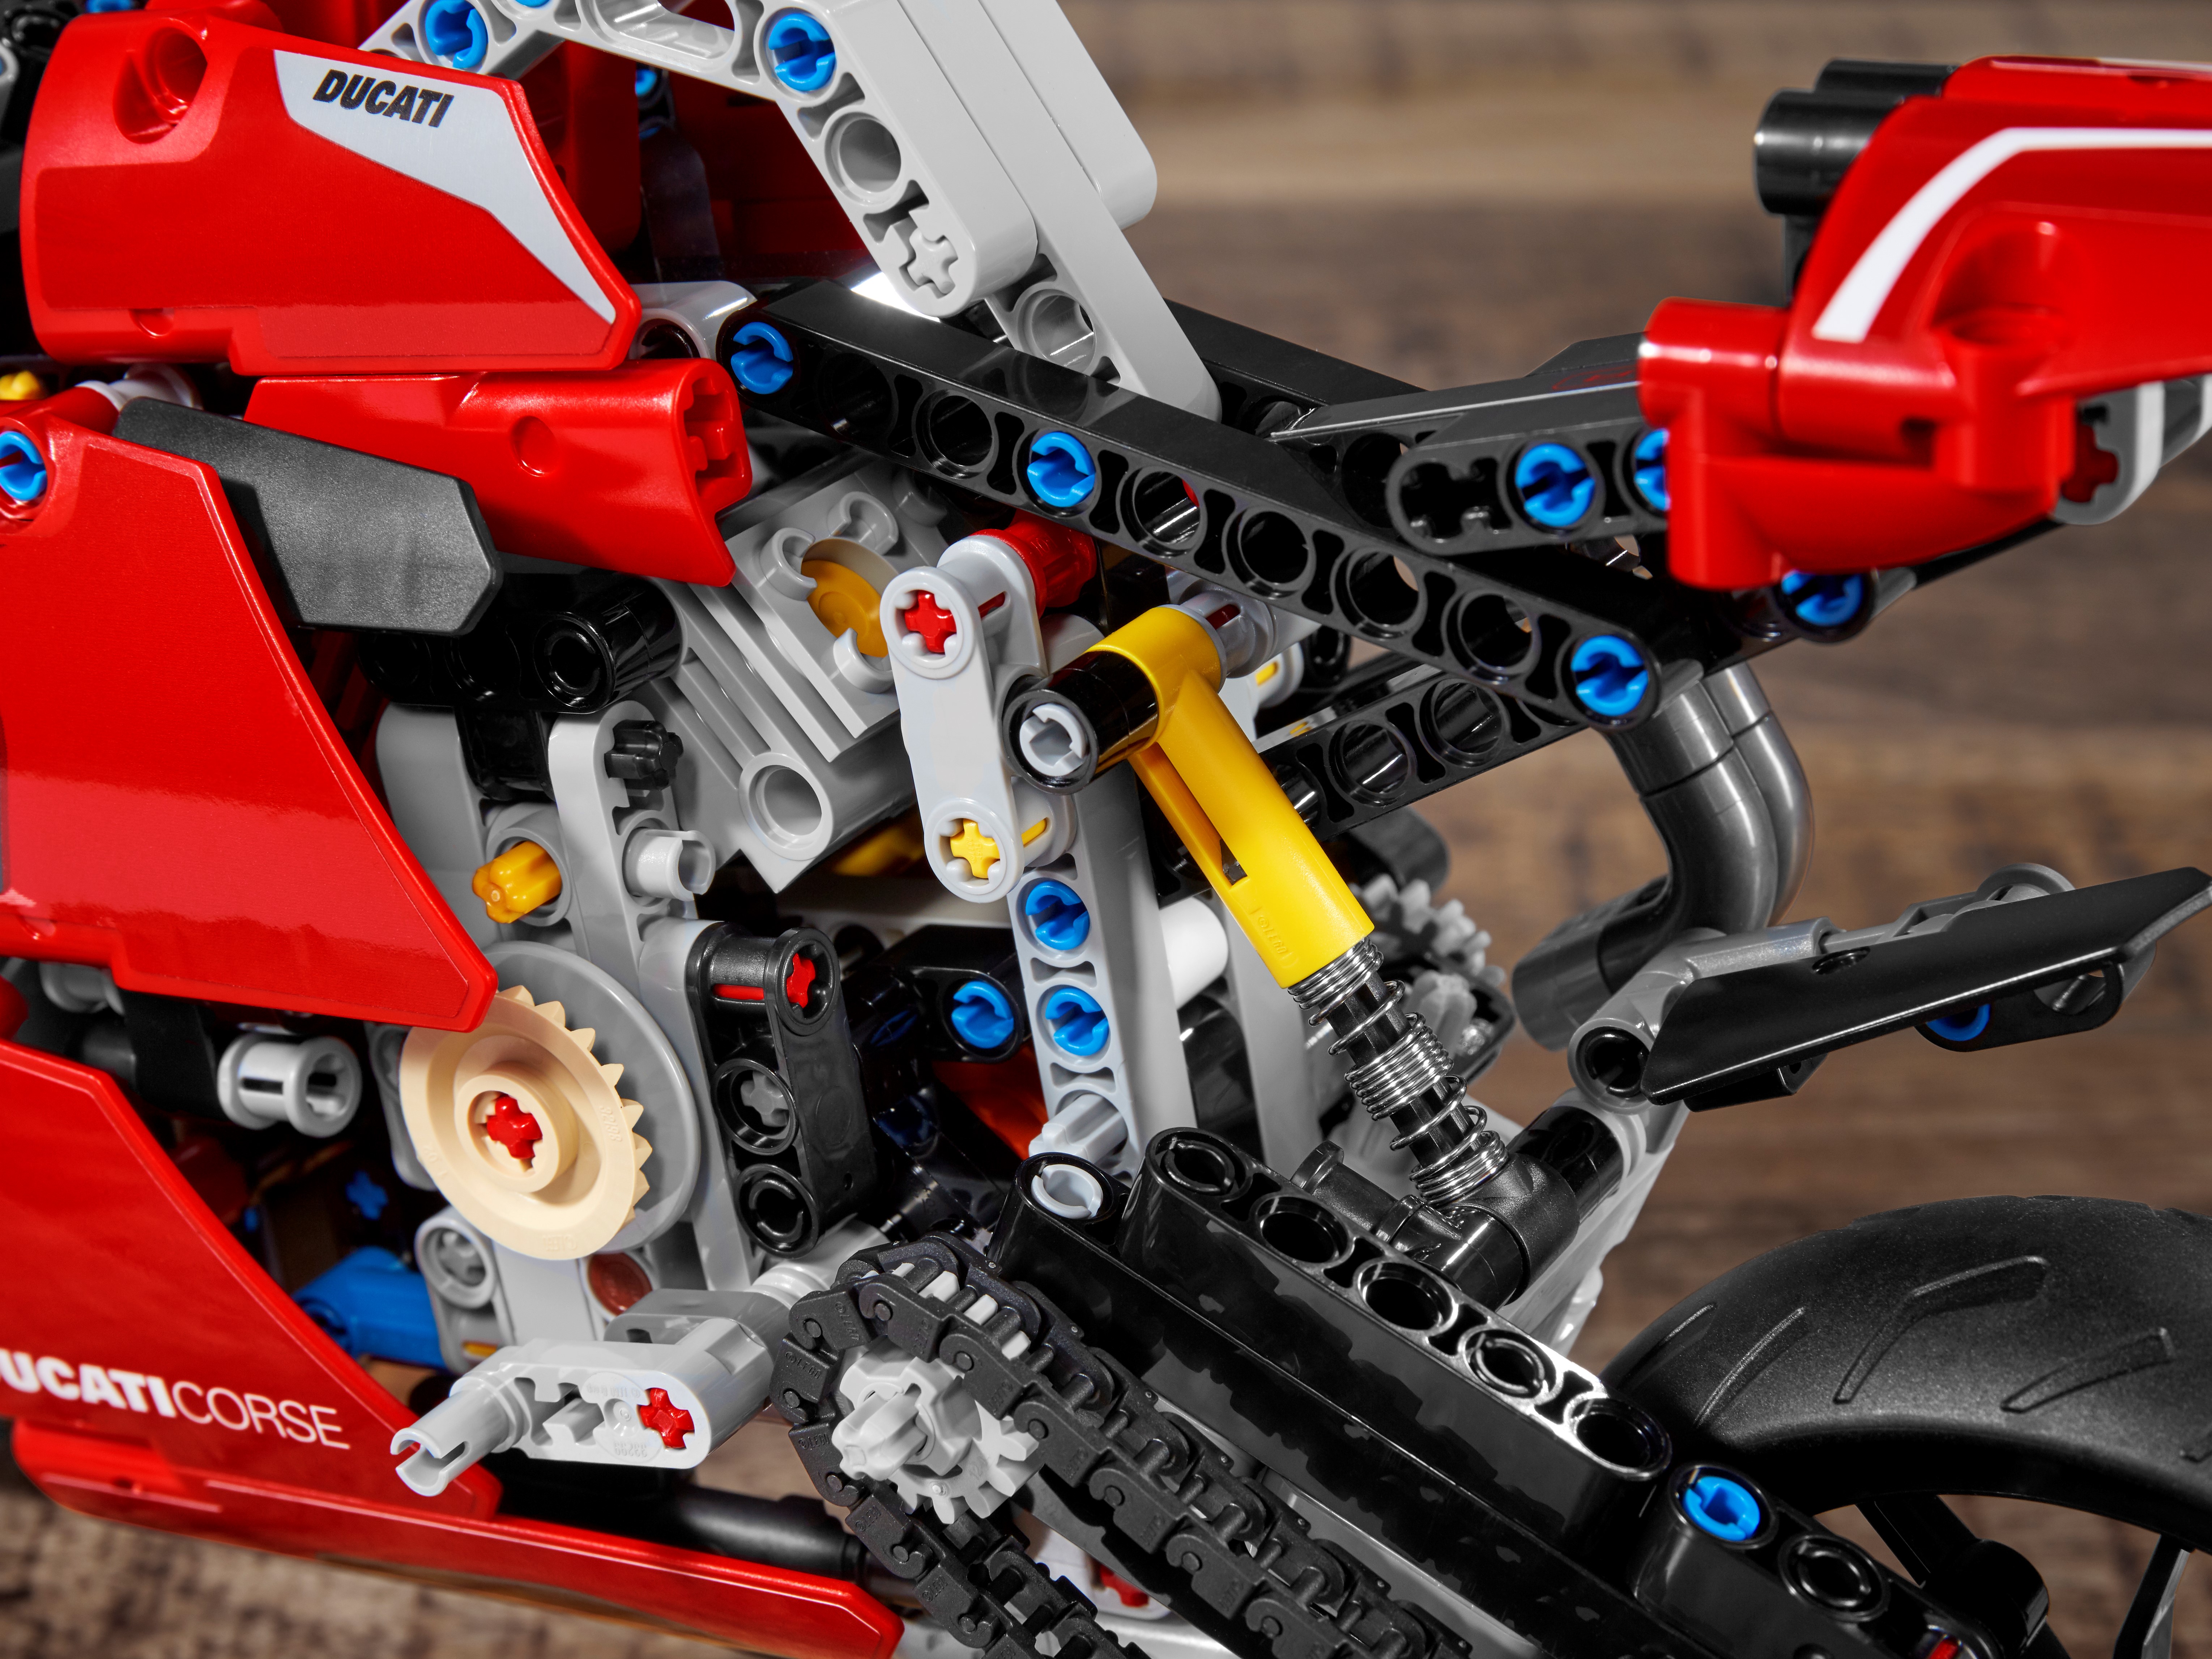 LEGO Technic Ducati Panigale V4 R 42107 (Retiring Soon) by LEGO